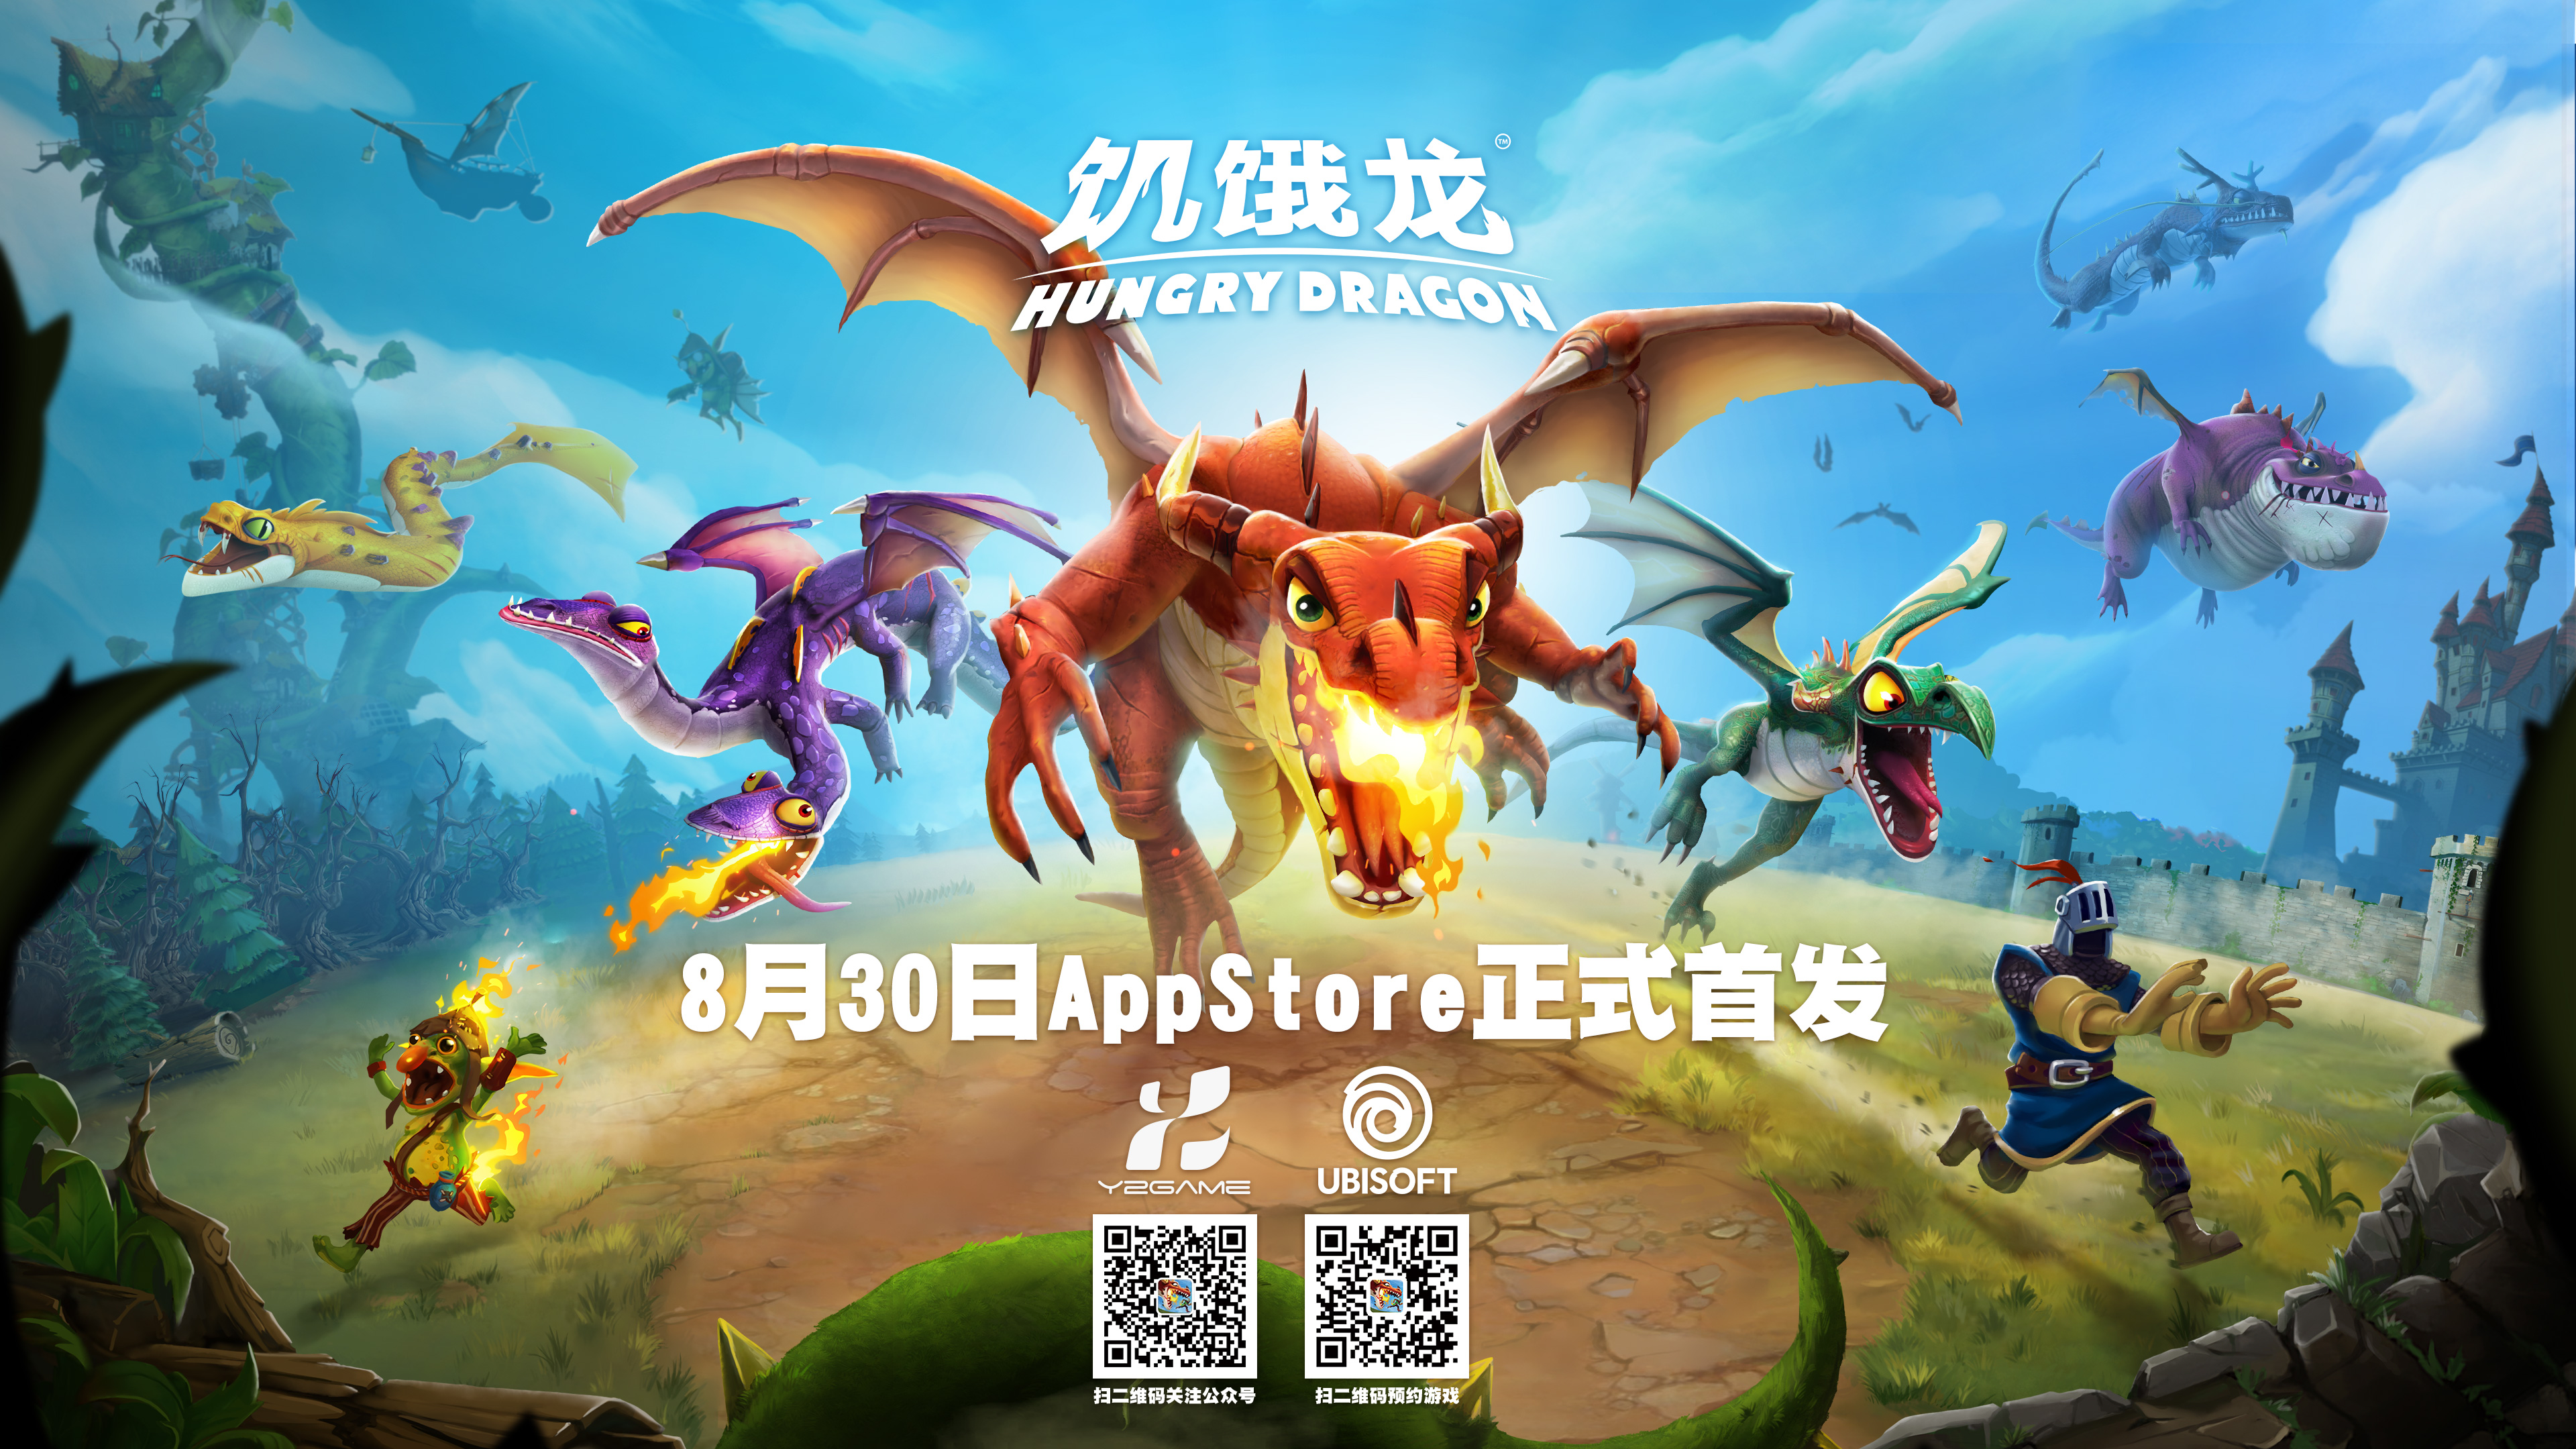 育碧宣布《饥饿龙》8月30日登陆全球AppStore CG首曝